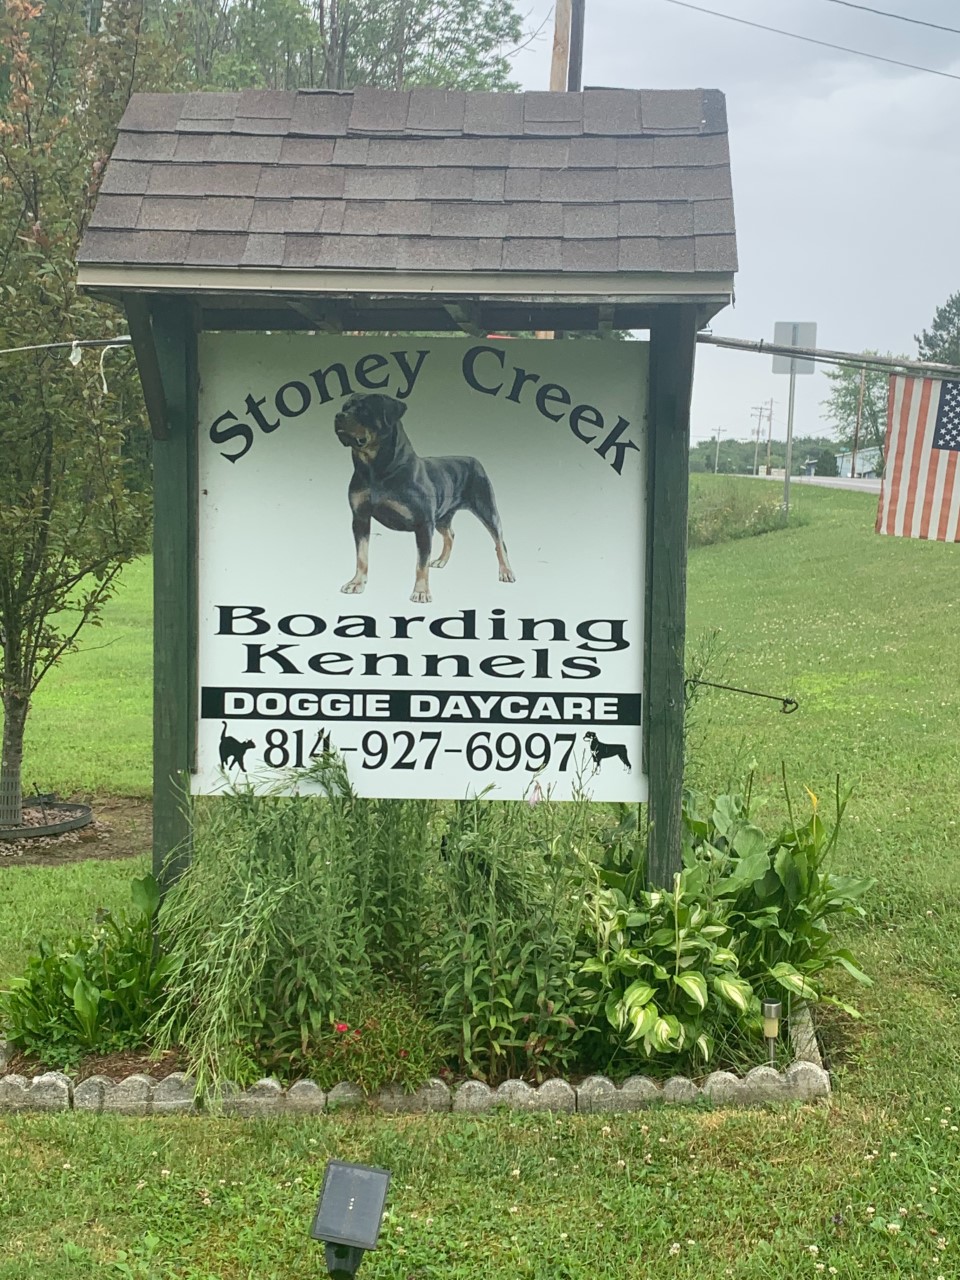 Stoneycreek Boarding Kennels Sign